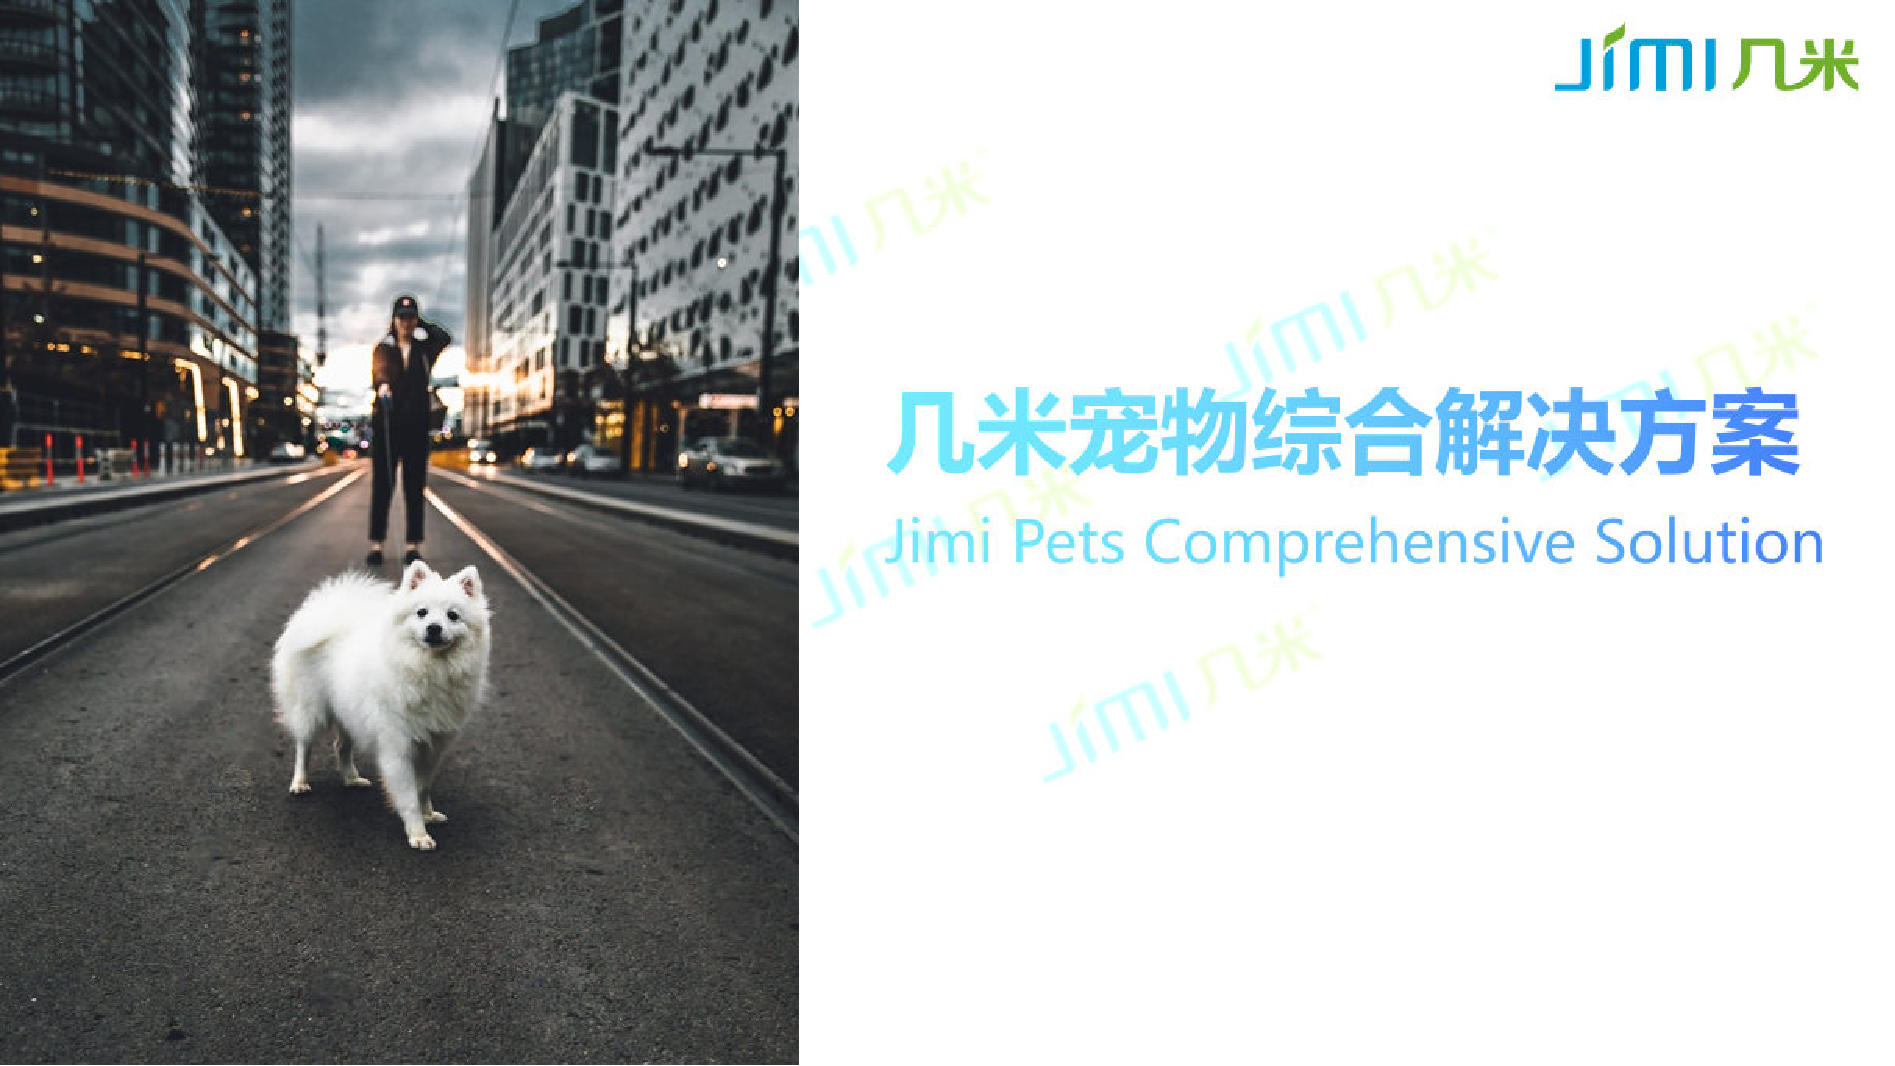 城市智慧宠物解决方案——几米物联图片